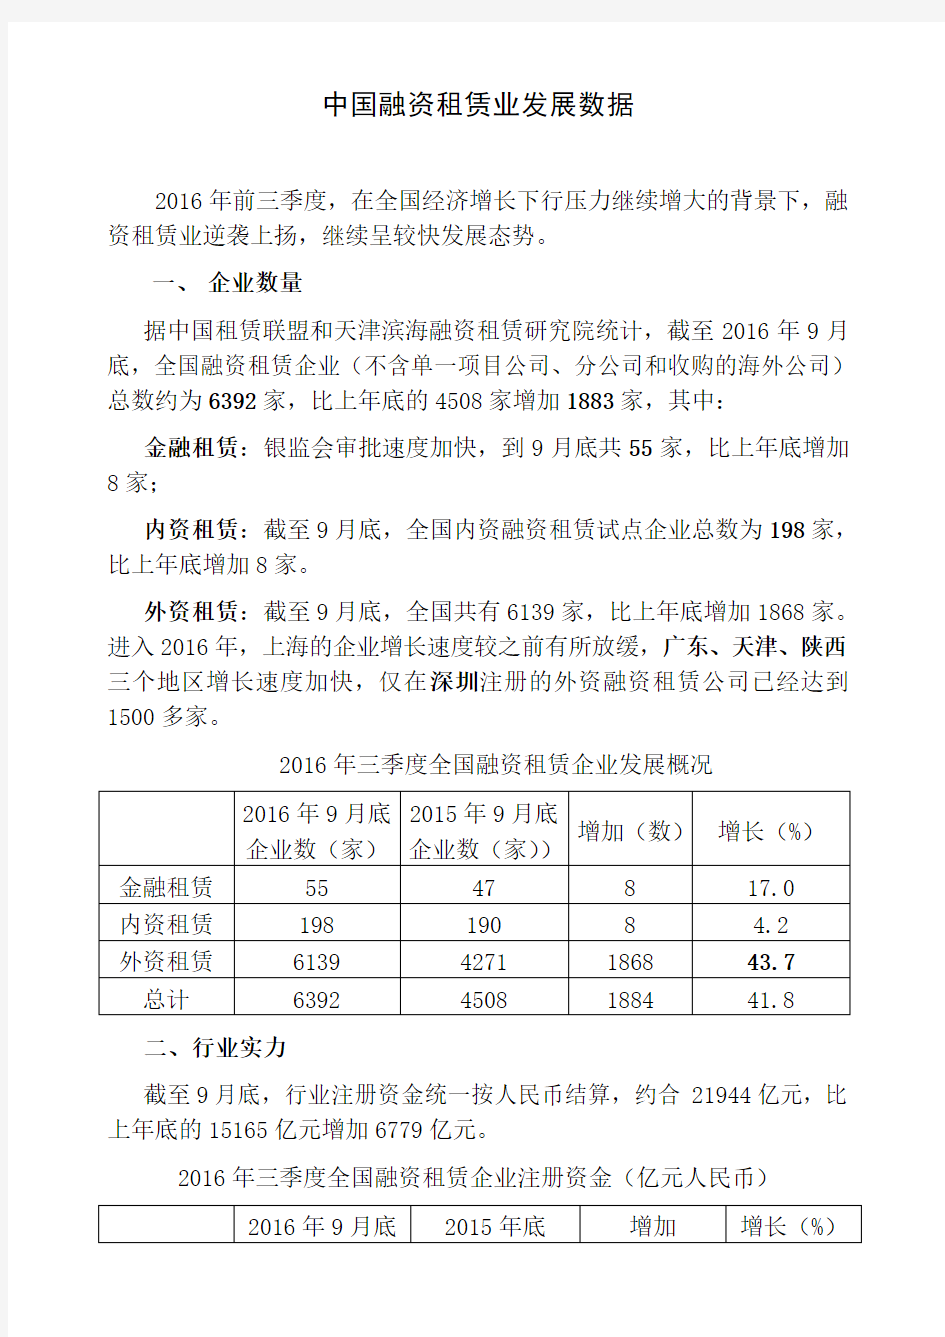 2016年中国融资租赁业发展数据